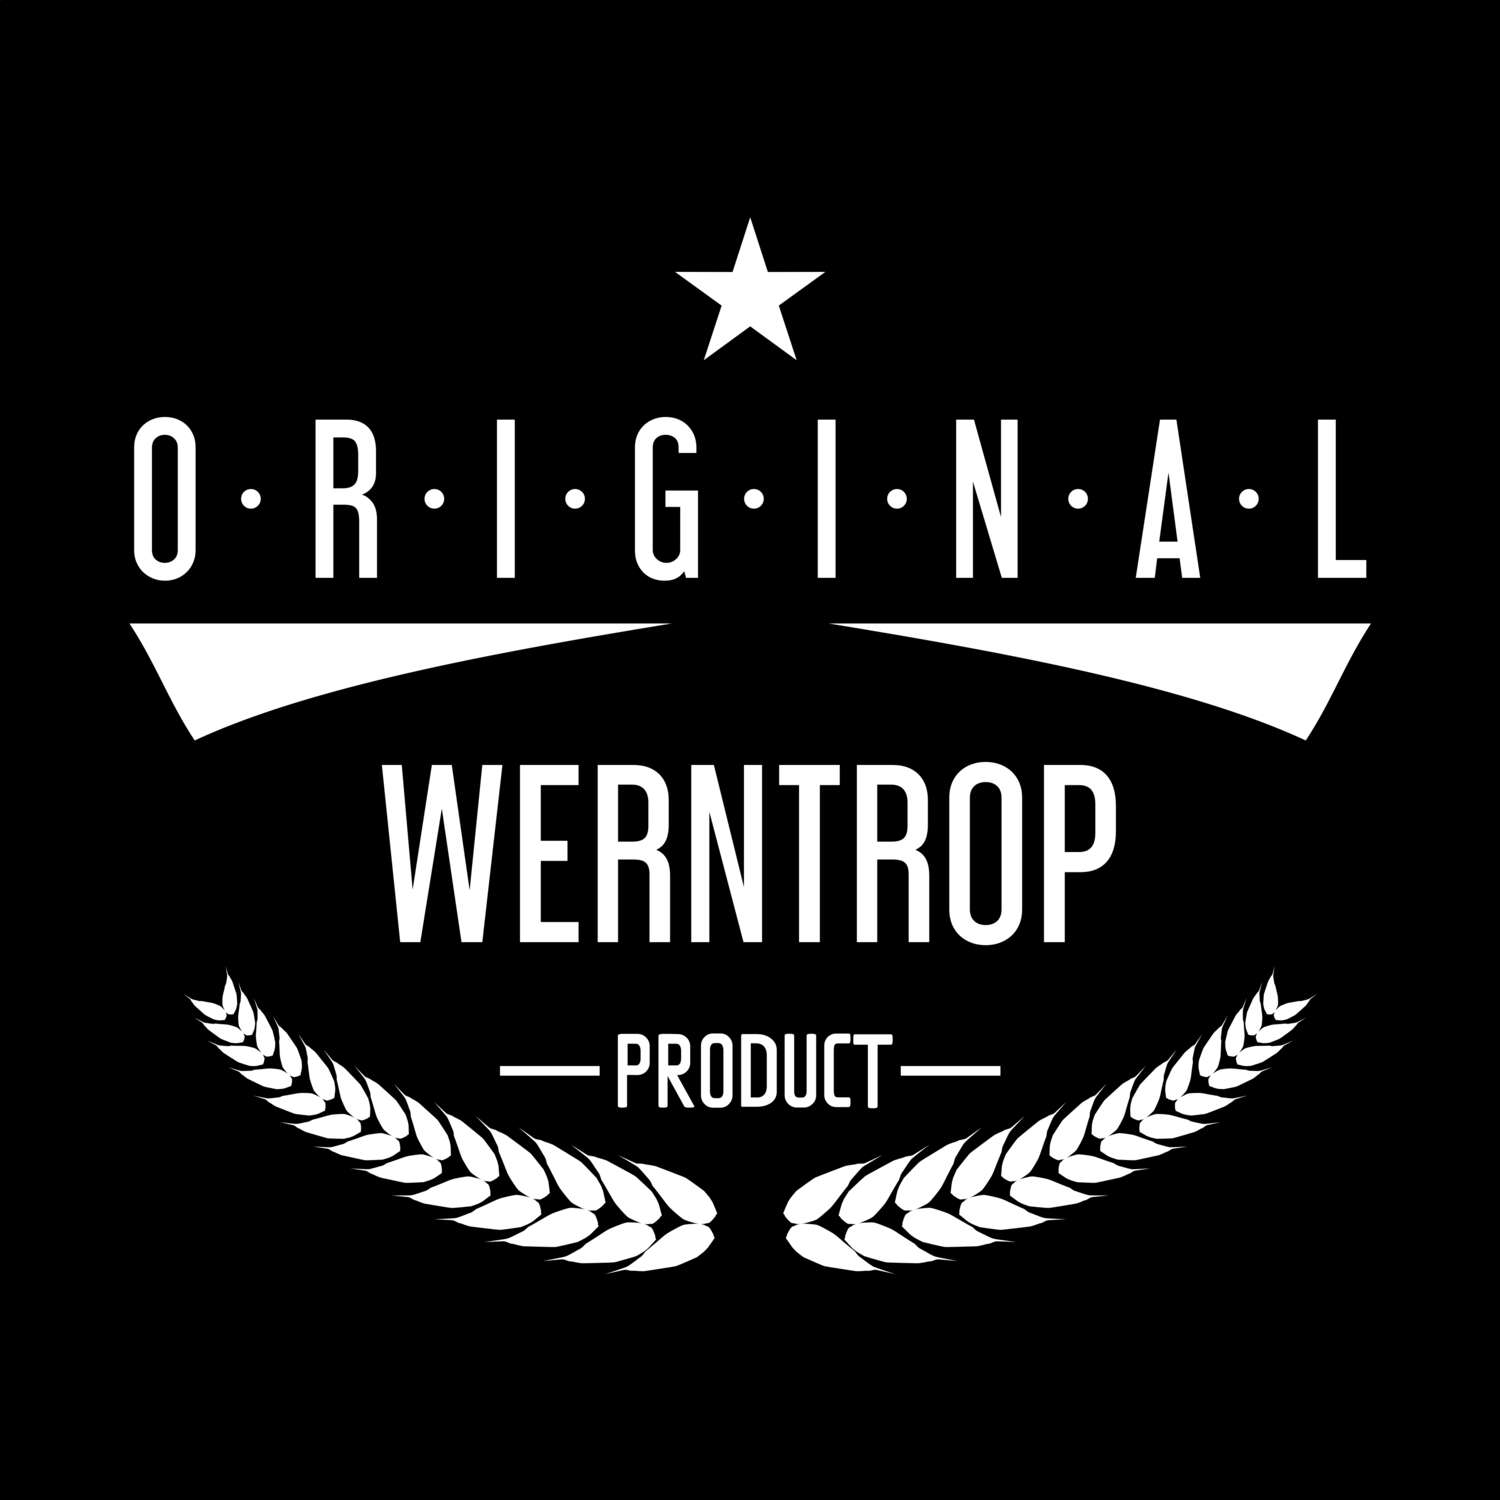 Werntrop T-Shirt »Original Product«